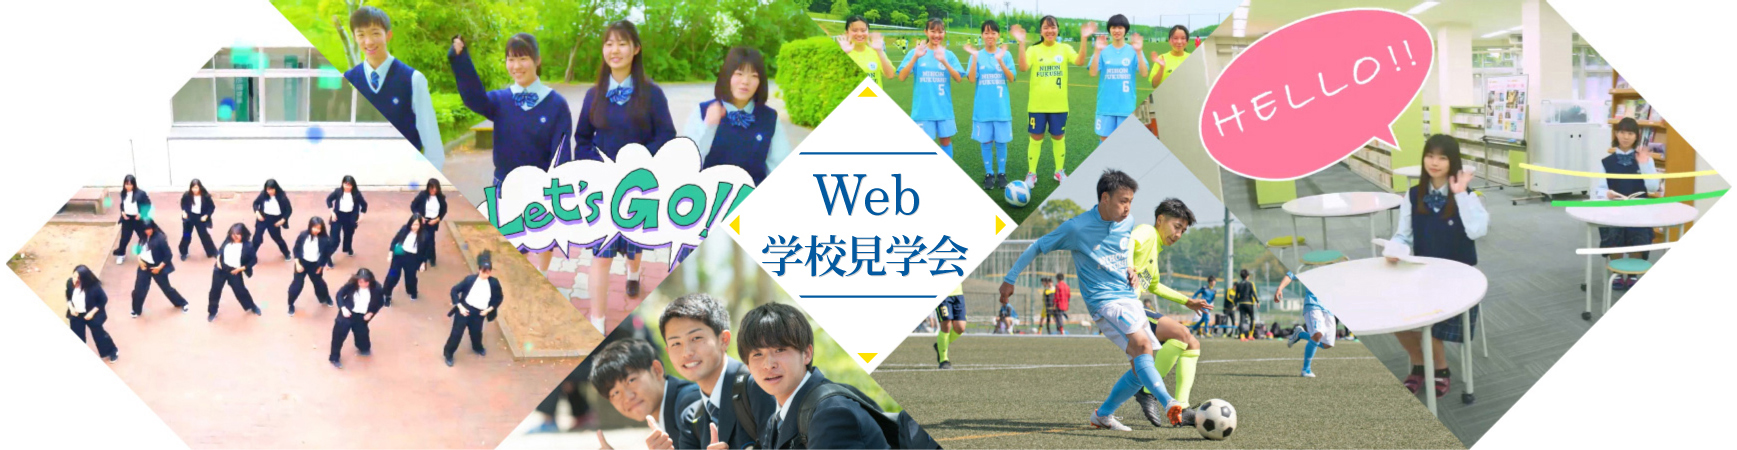 Web学校見学会2020